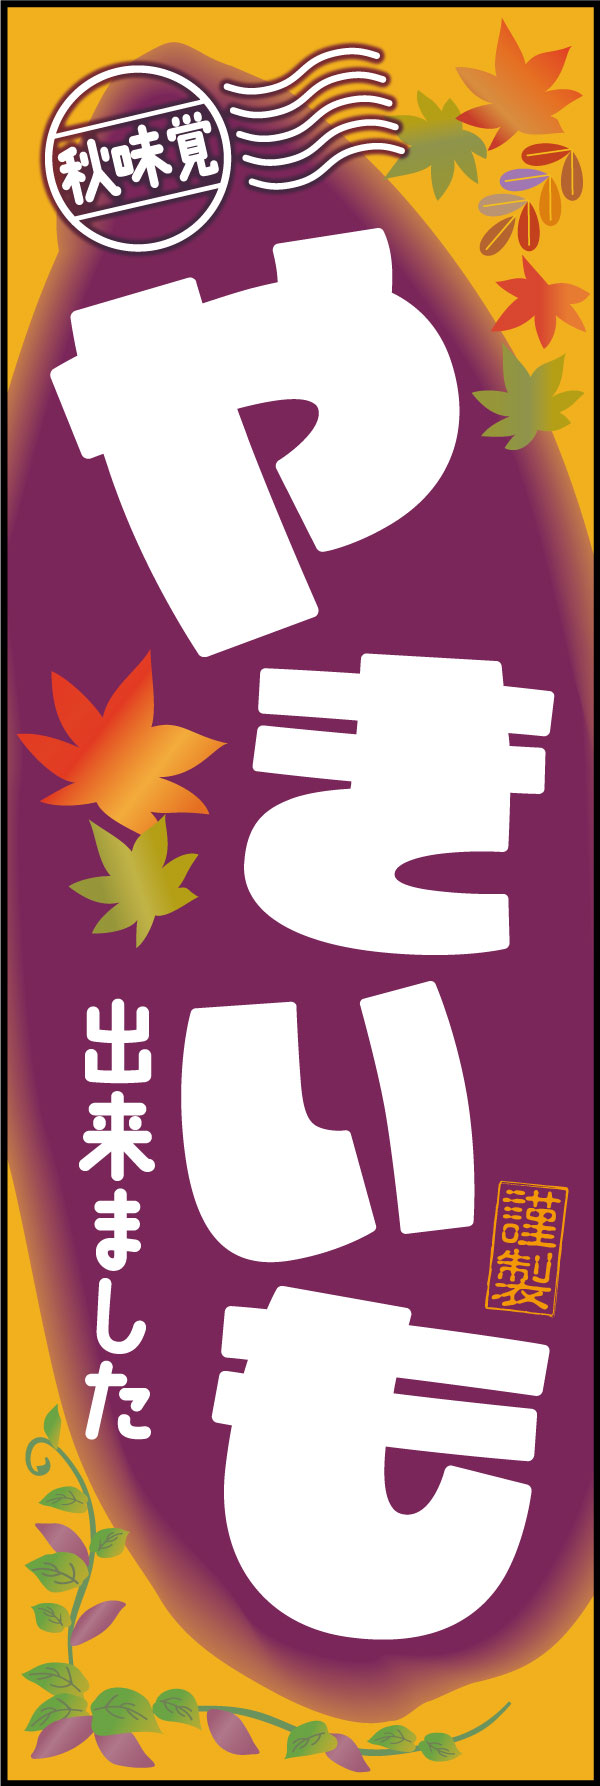 やきいも 174_01秋のスイーツ「やきいも」のぼりです。遠くからでも分かりやすい黄色・紫のさつま芋カラーの配色と、紅葉のイラストが彩り豊かな秋の味覚を演出しています。（M.H） 